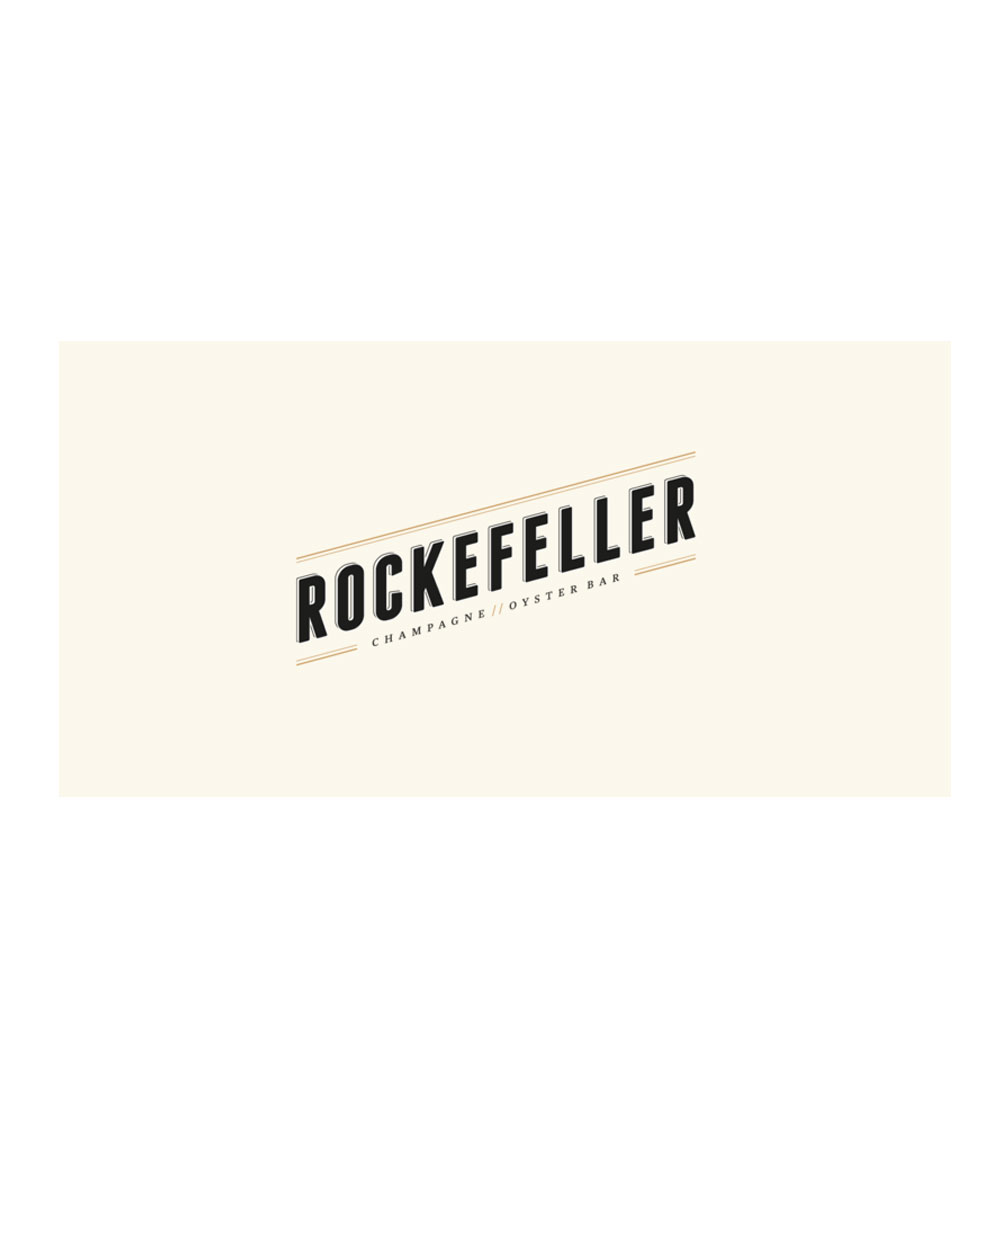 Rockefeller gift voucher